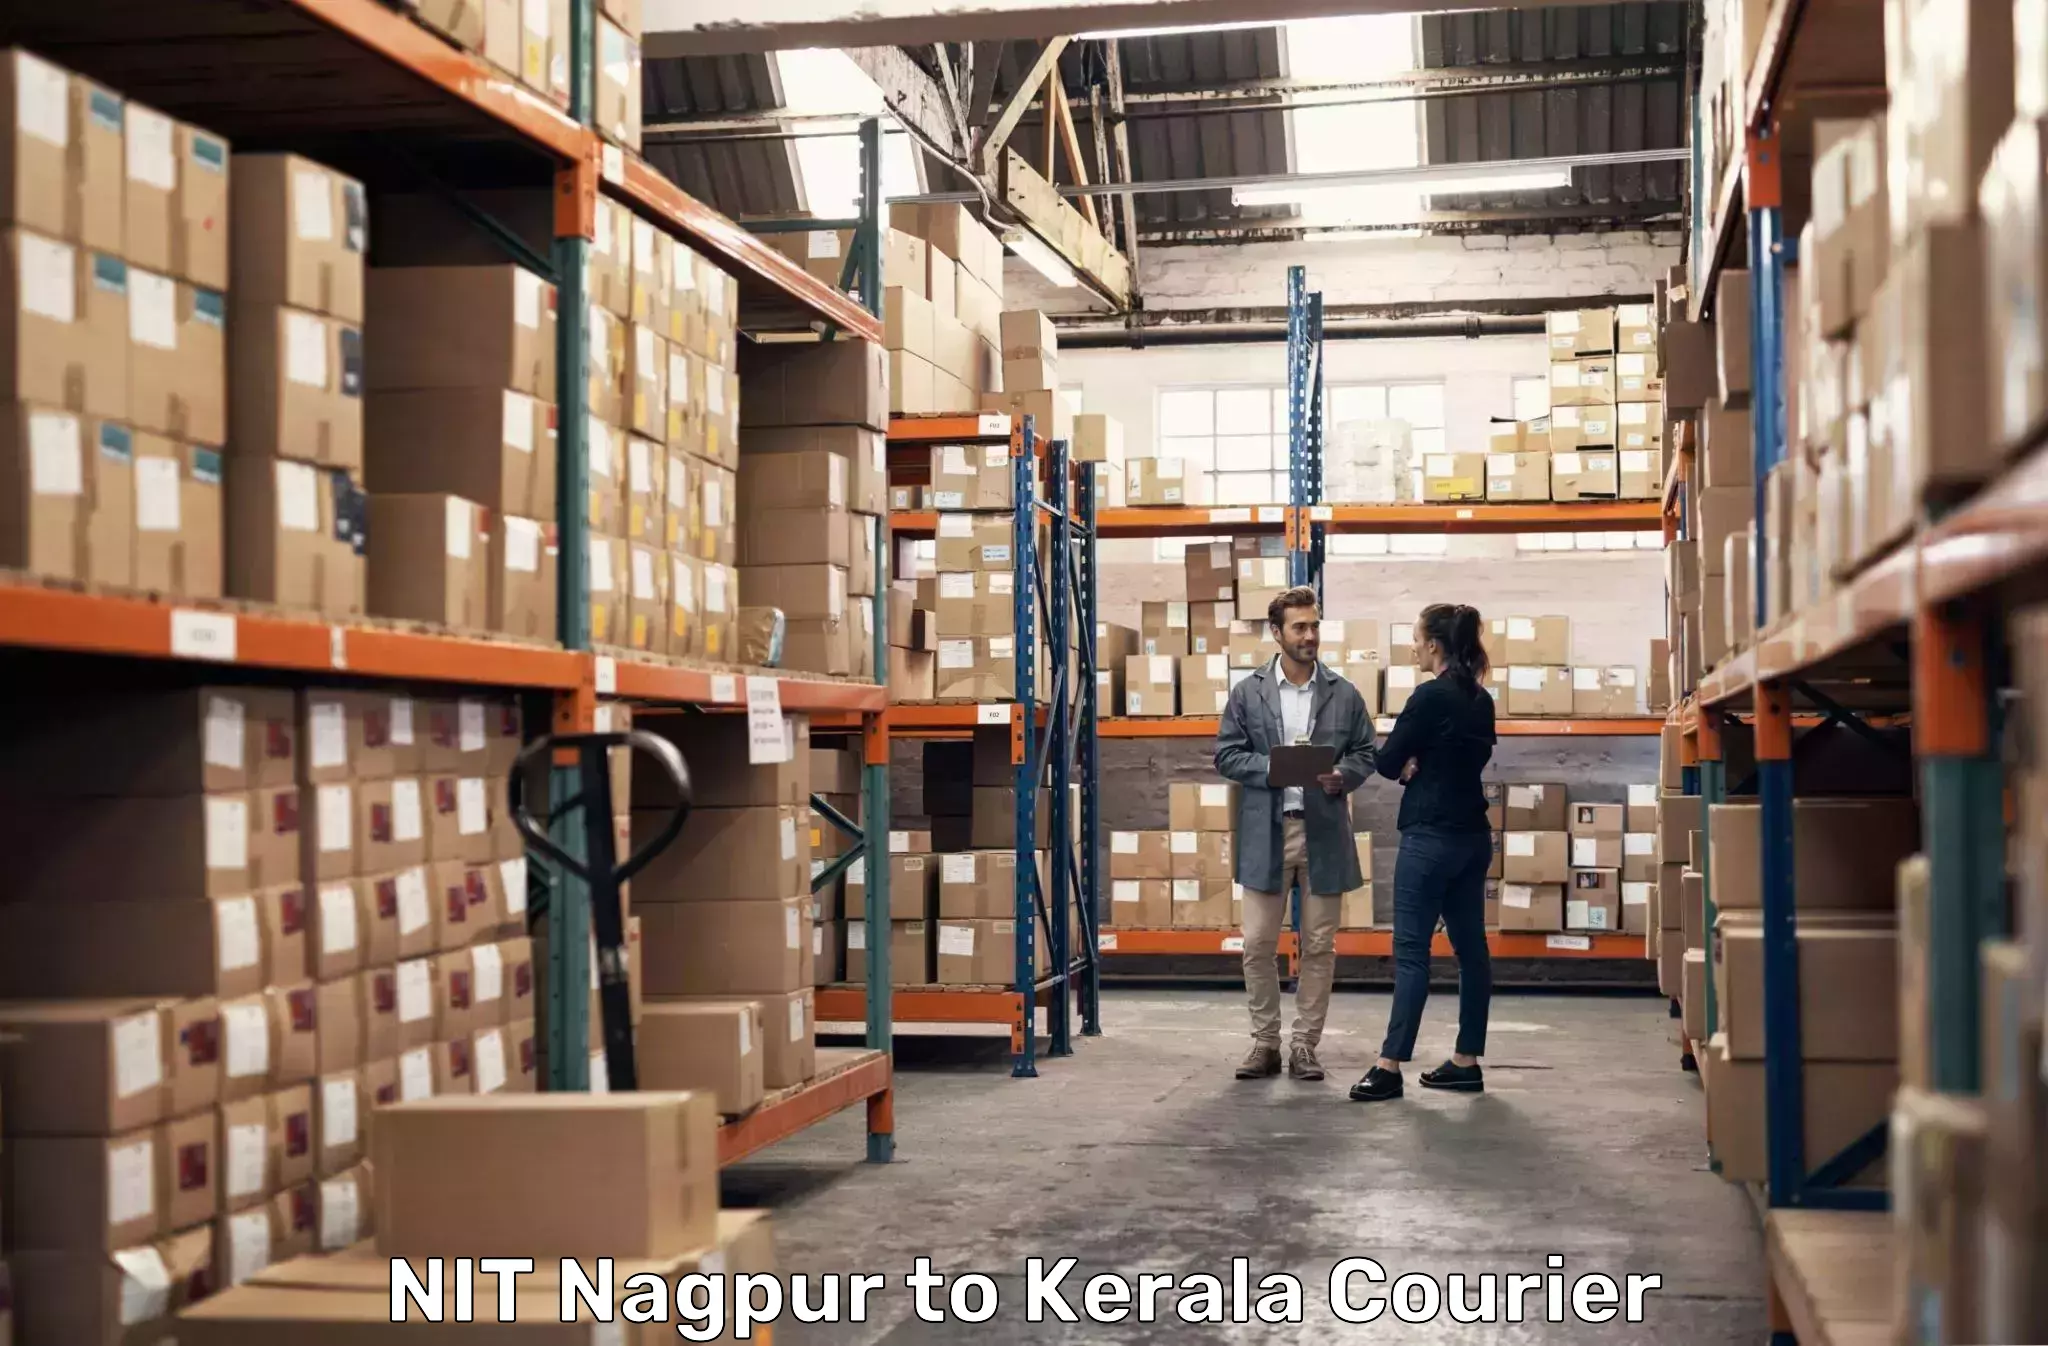 Flexible parcel services NIT Nagpur to Chengannur